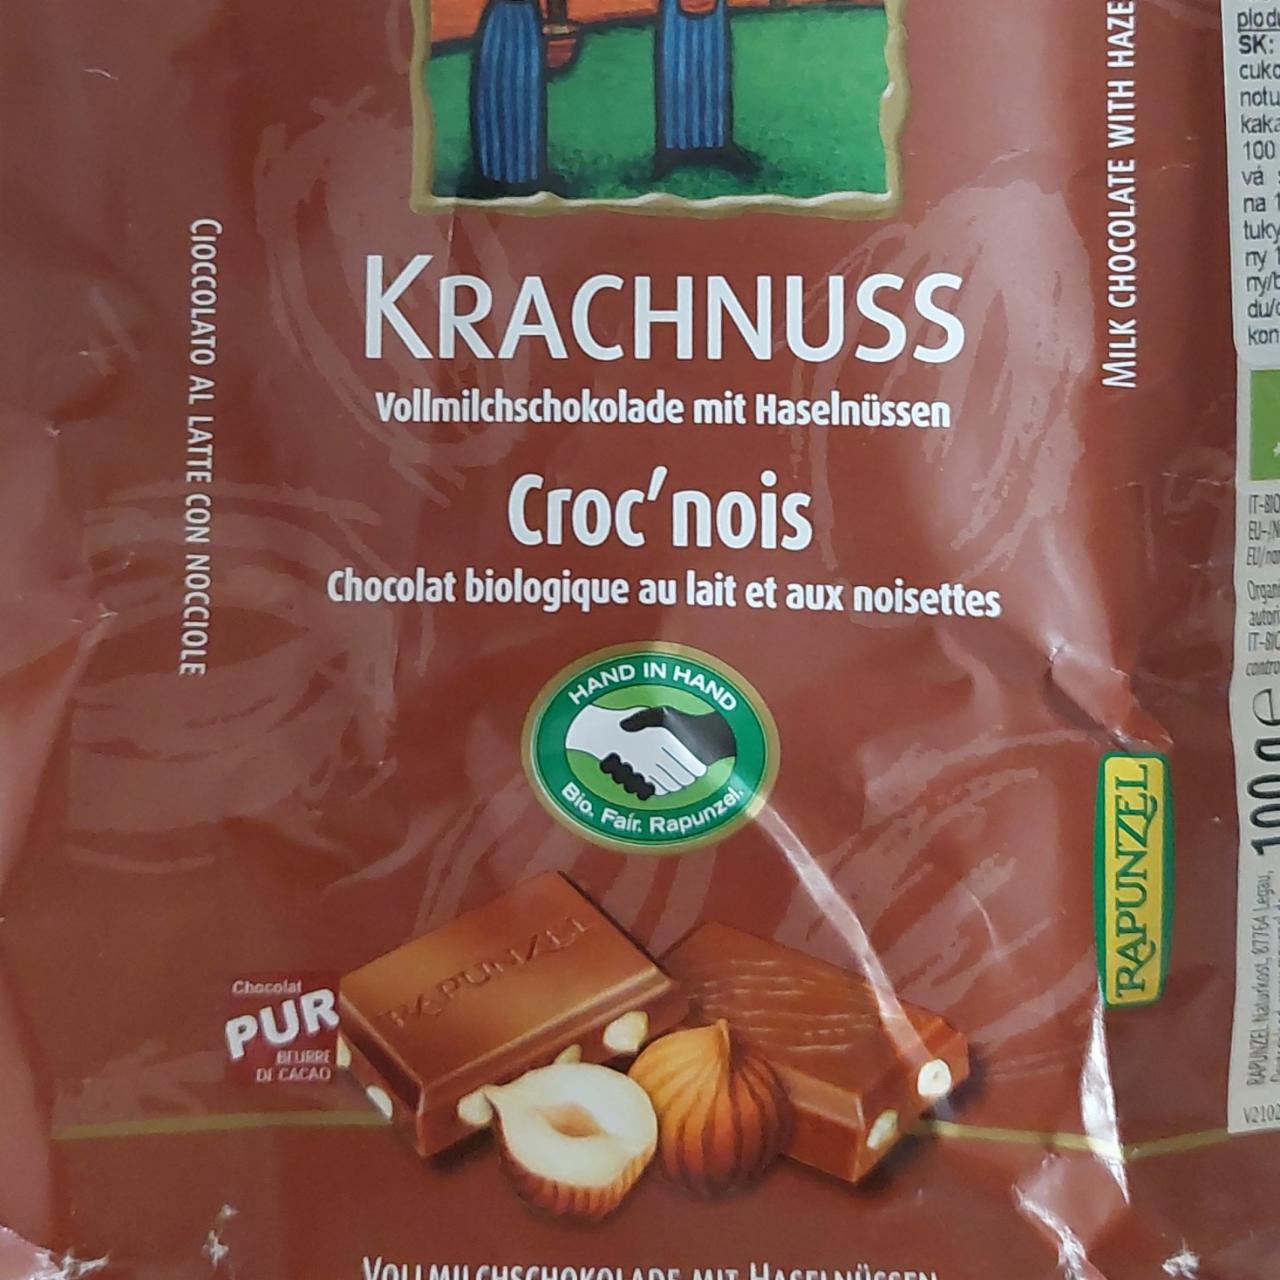 Fotografie - Krachnuss Vollmilchschokolade mit Haselnüssen Rapunzel